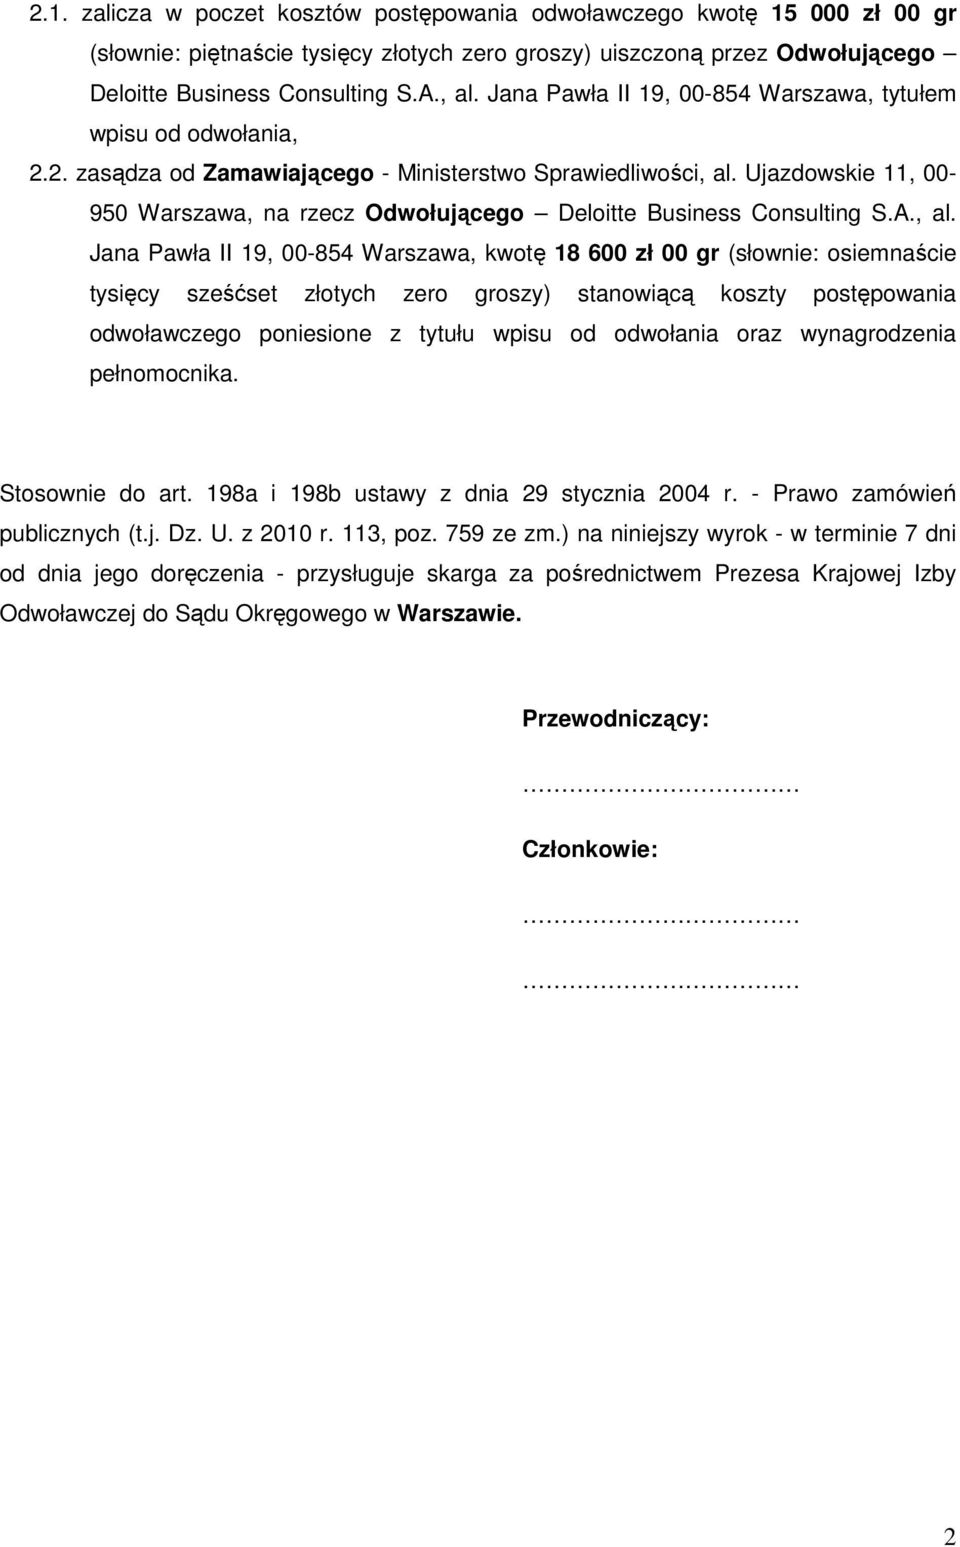 Ujazdowskie 11, 00-950 Warszawa, na rzecz Odwołującego Deloitte Business Consulting S.A., al.